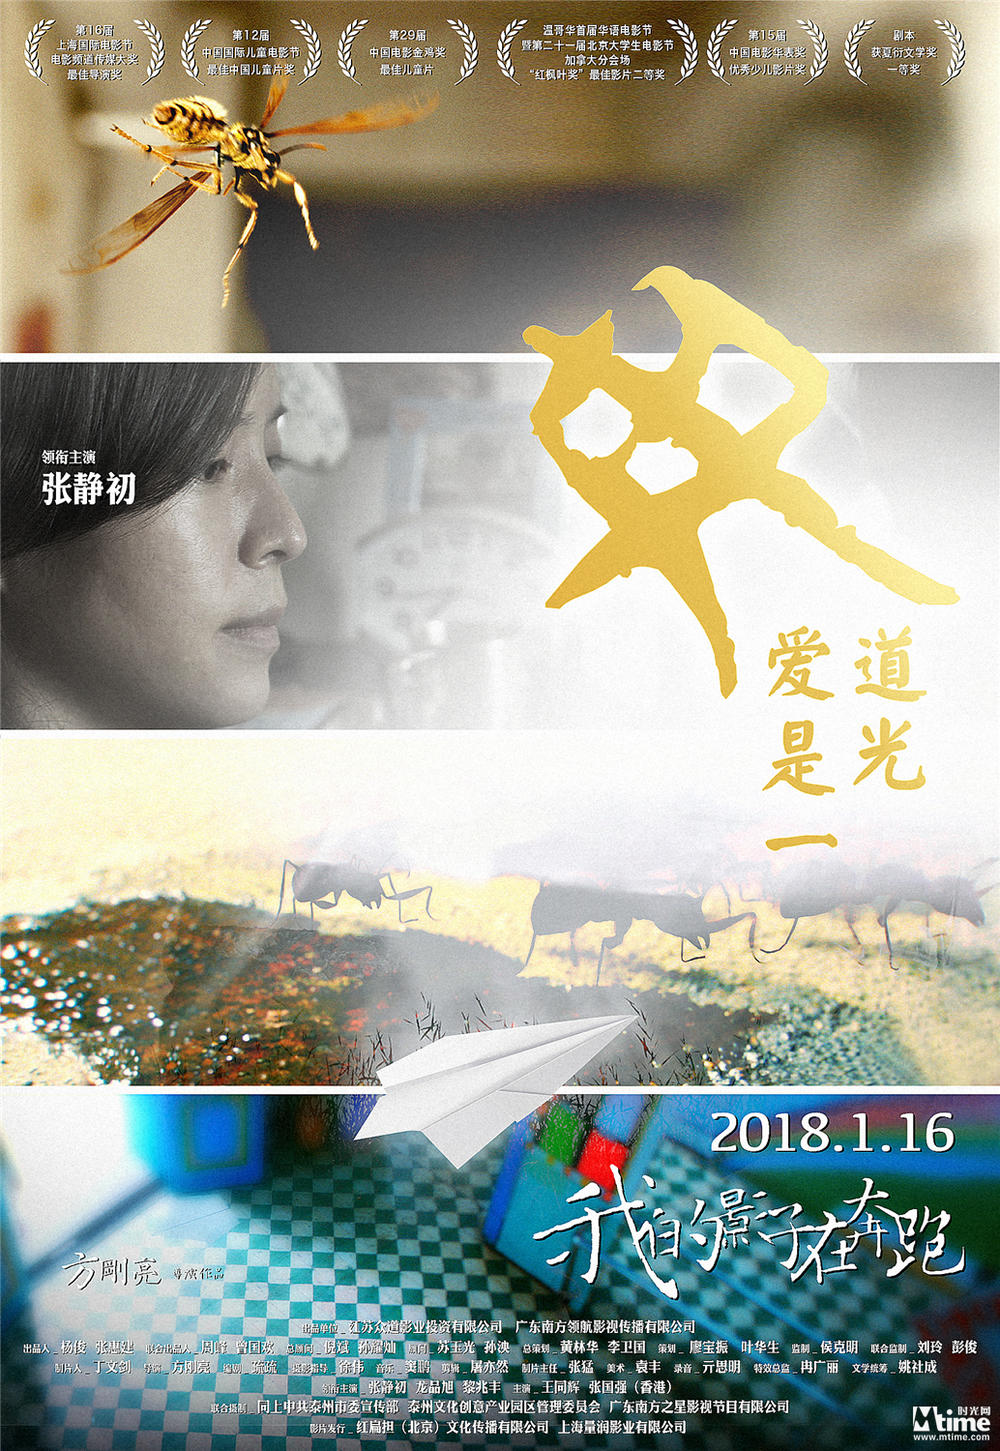 张静初《我的影子在奔跑》定档1.16 电影发布母子版海报(图1)